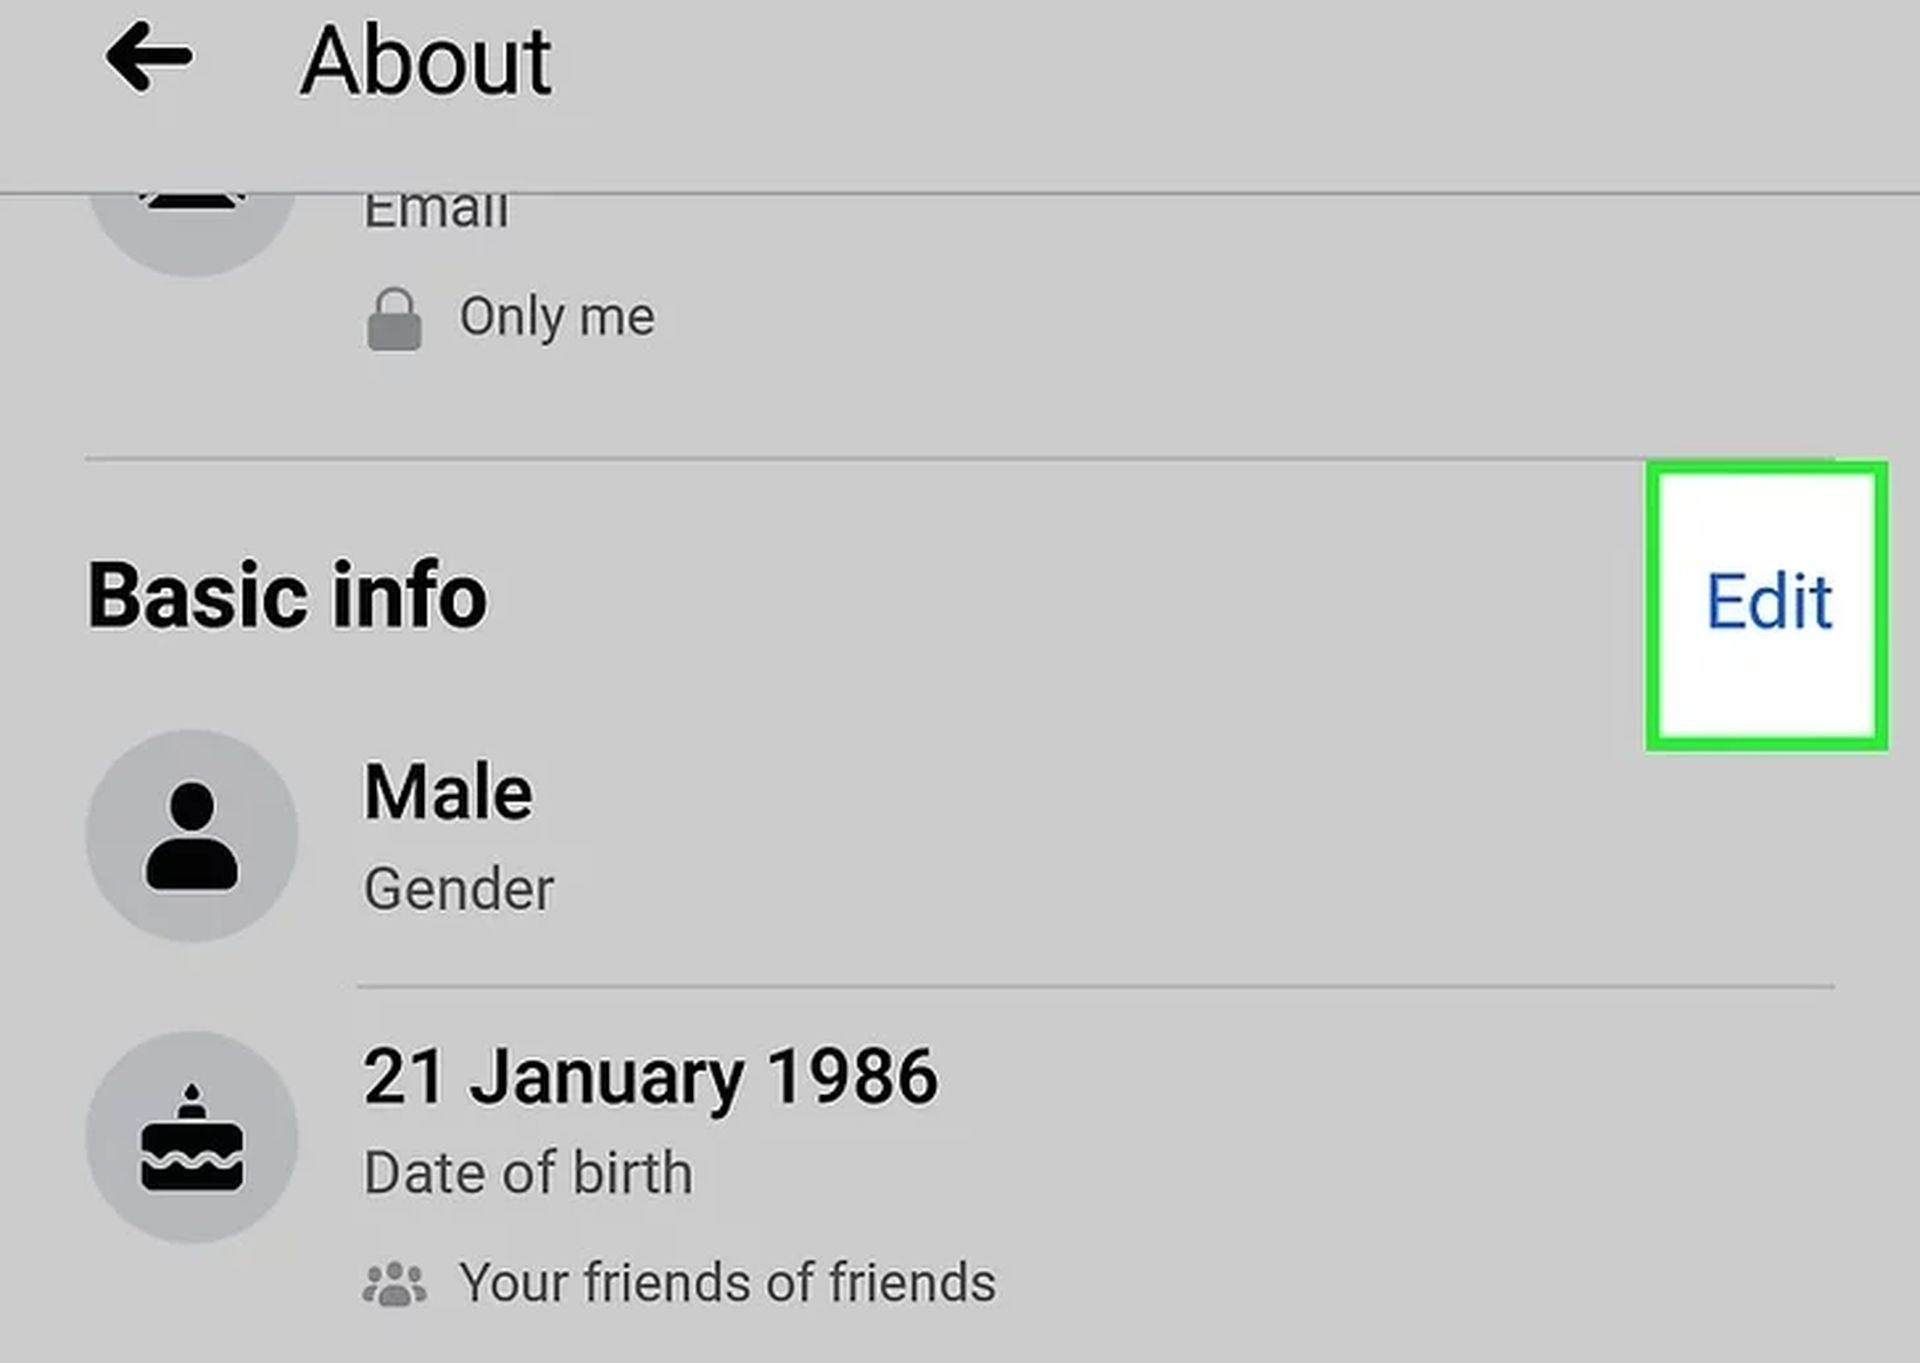 Aujourd'hui, nous allons voir comment changer votre anniversaire sur Facebook et comment masquer votre anniversaire afin que vous puissiez personnaliser votre profil comme vous le souhaitez.